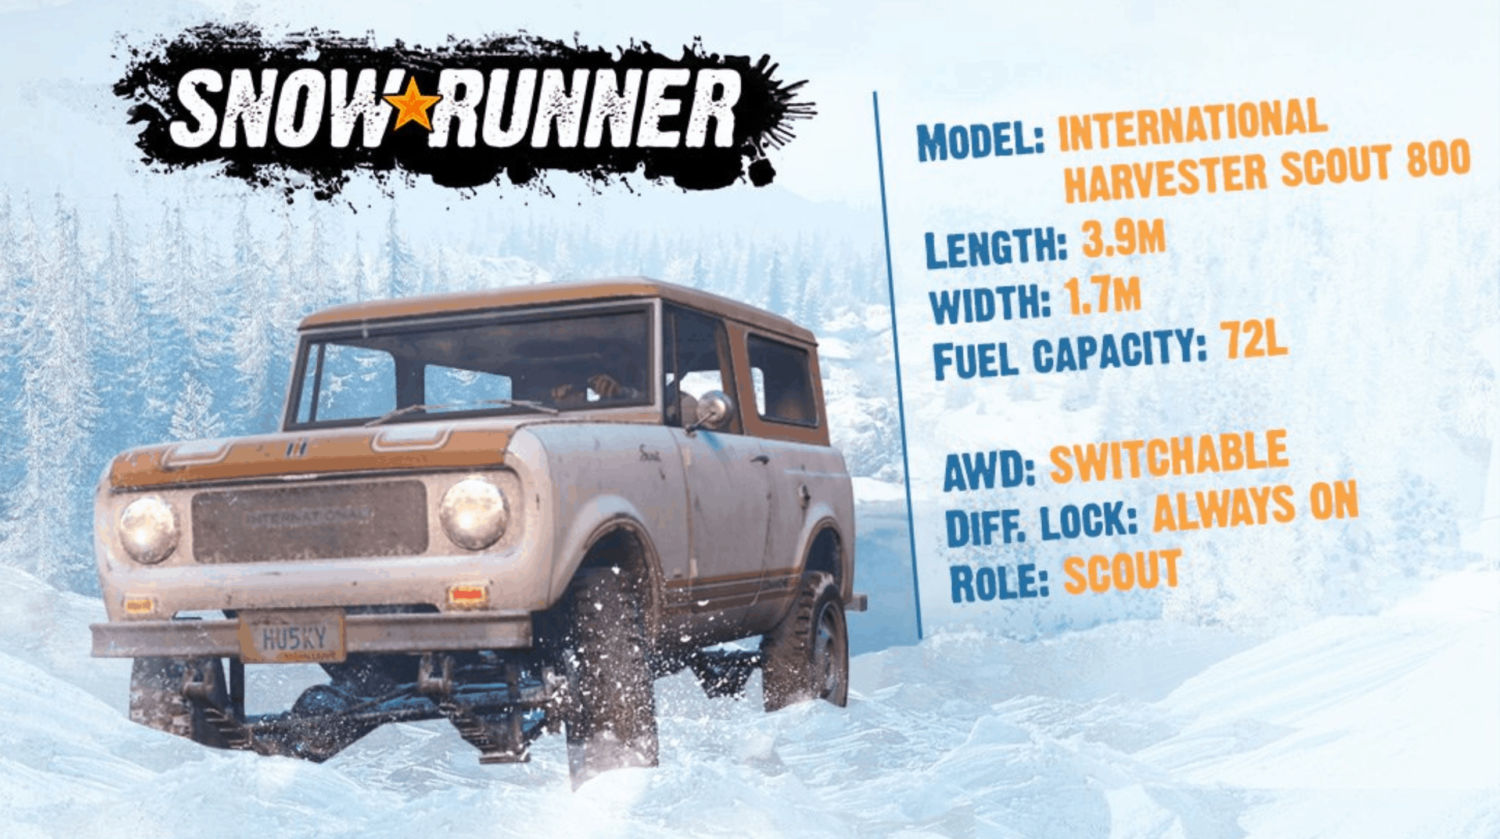 International Harvester Scout 800 for SnowRunner